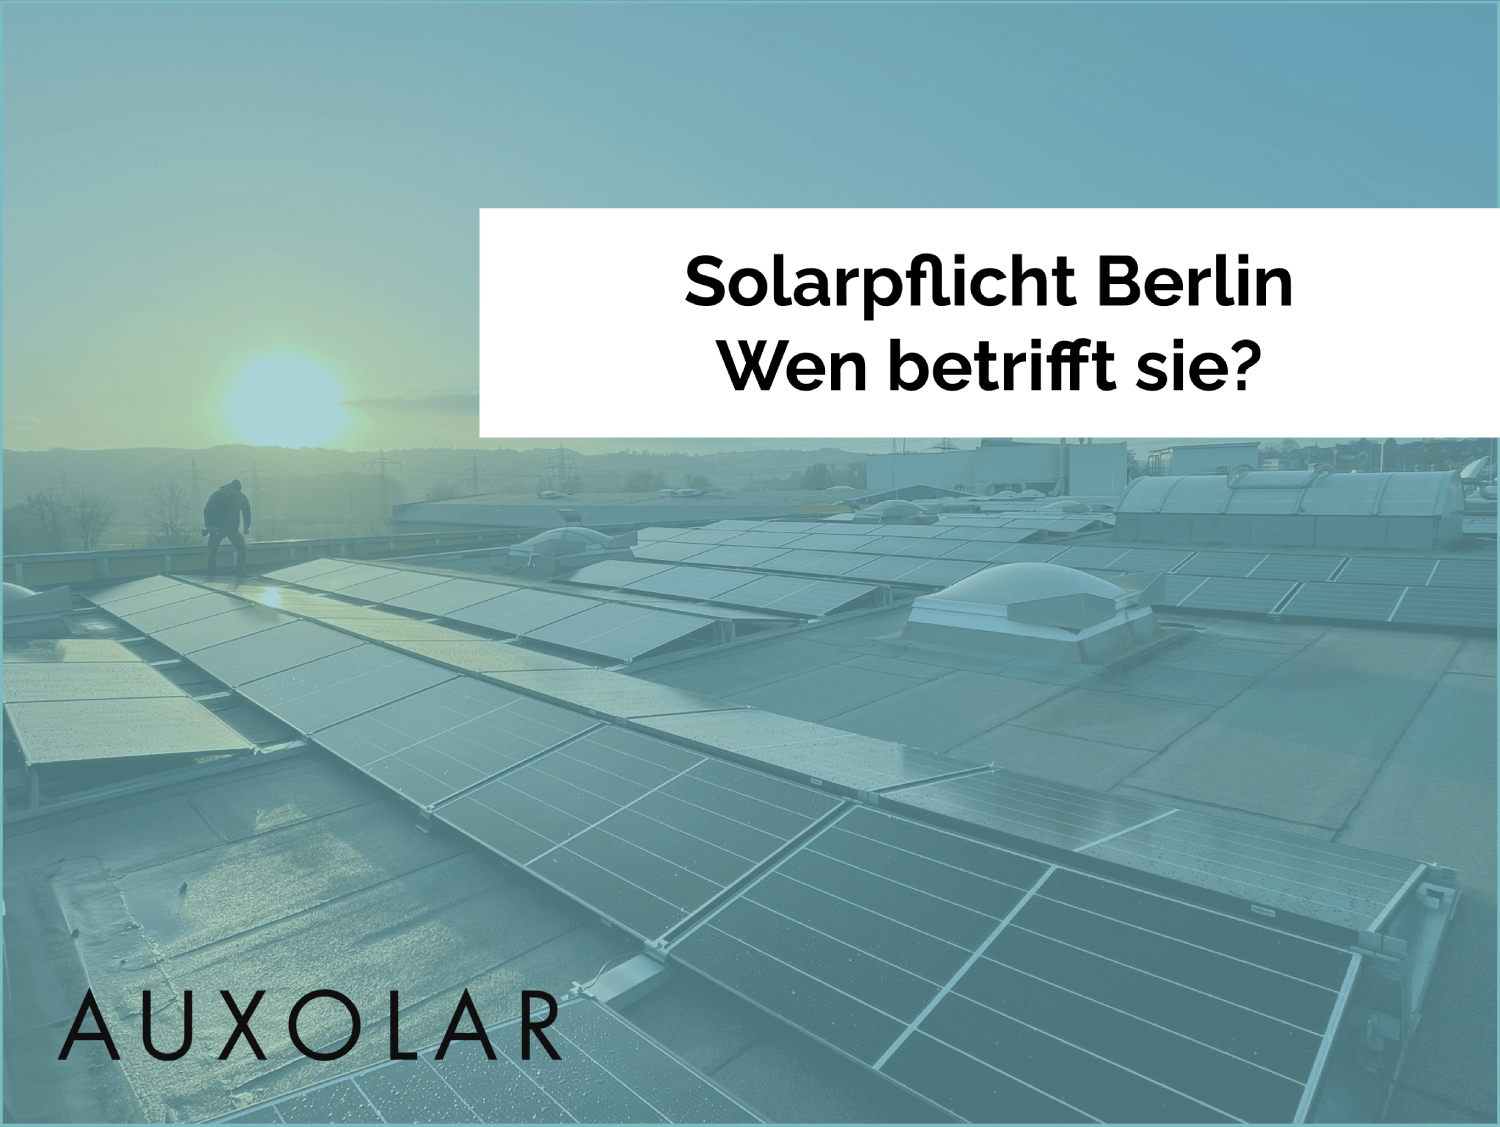 Die Solarpflicht für Berlin ab 01. Januar 2023